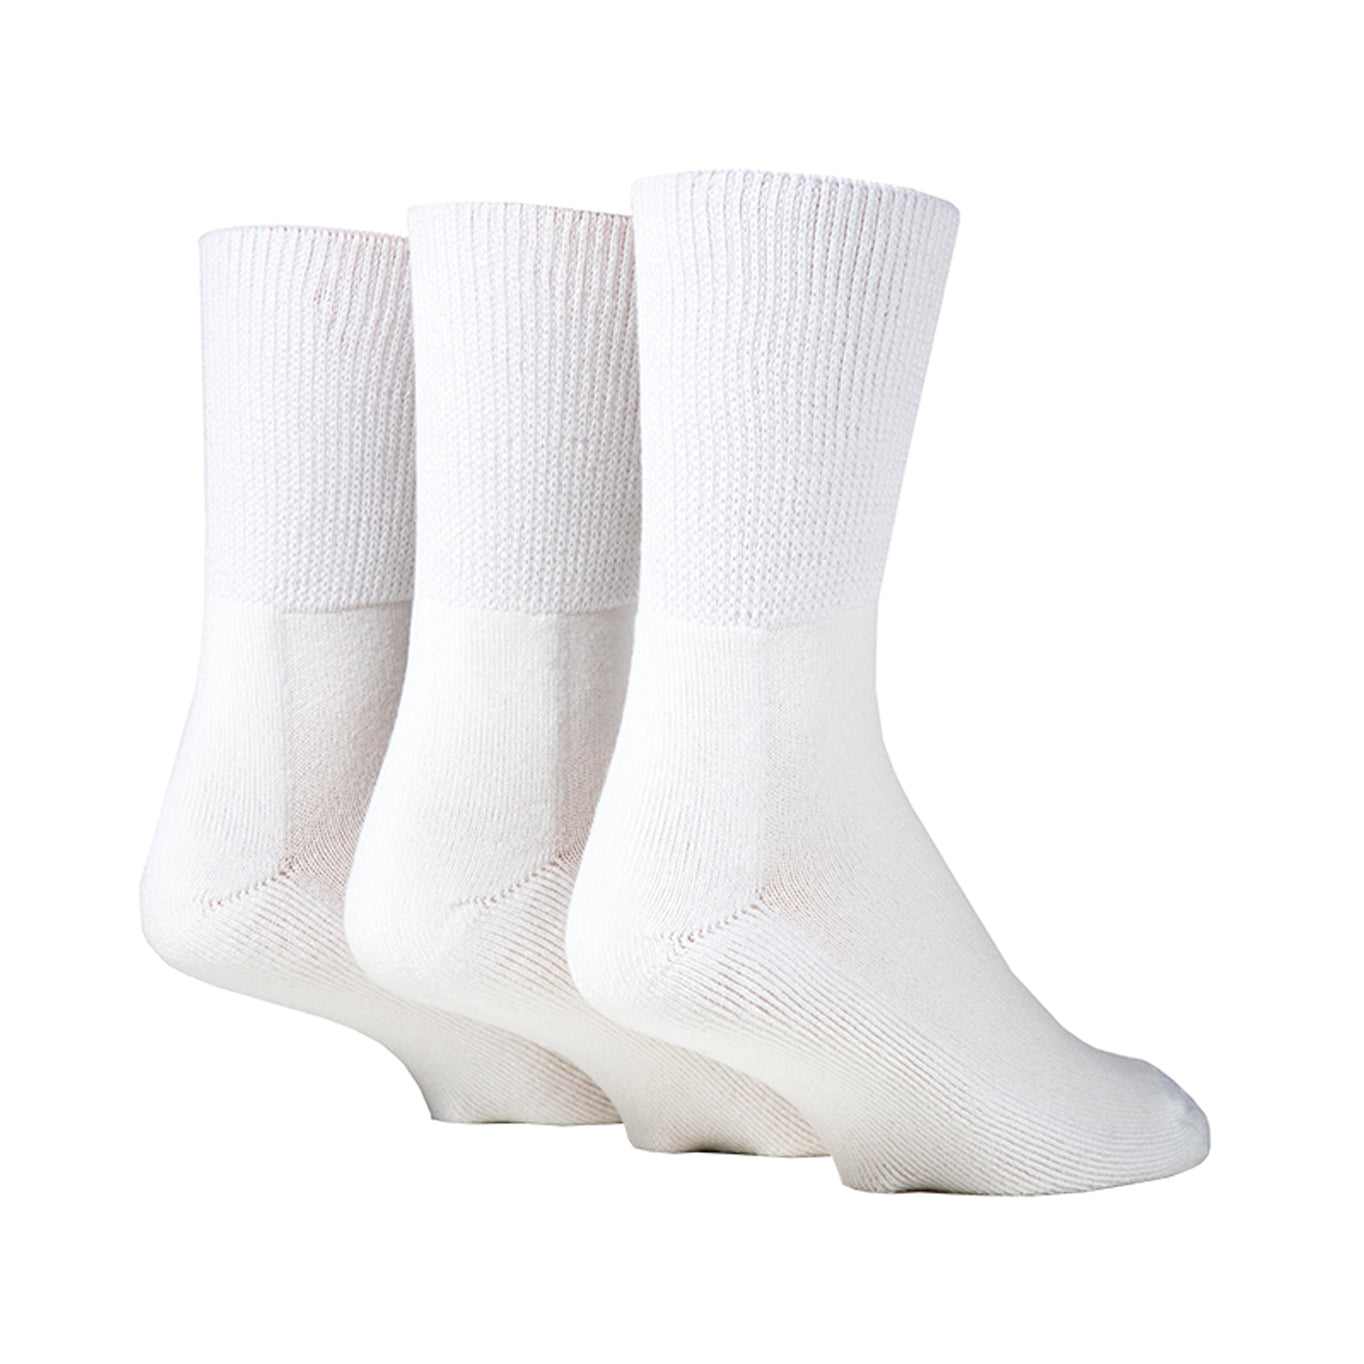 Ananda Professional Cooling Comfort Diabetic Socks